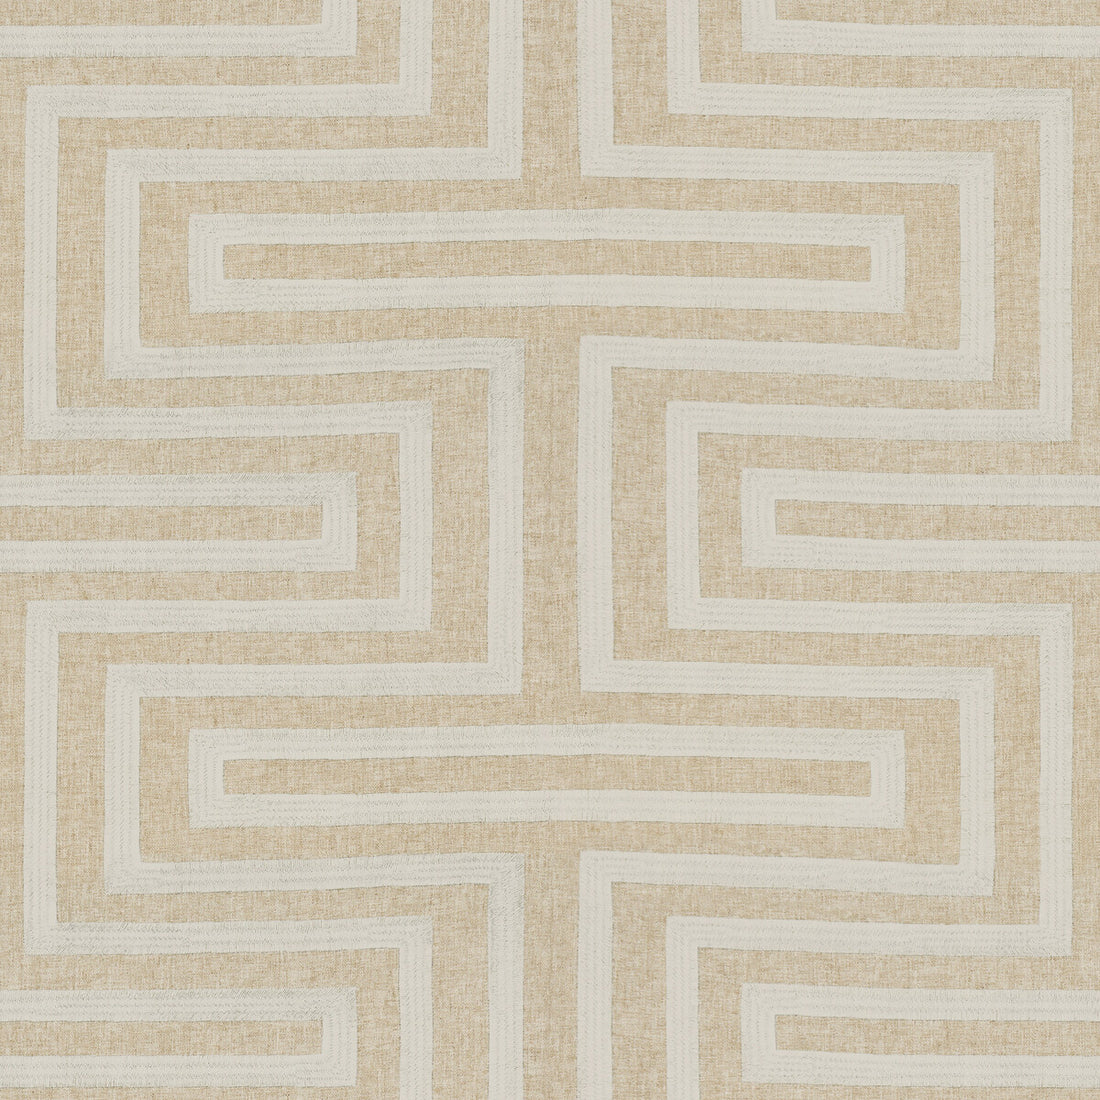 Kravet Design fabric in 34417-16 color - pattern 34417.16.0 - by Kravet Design